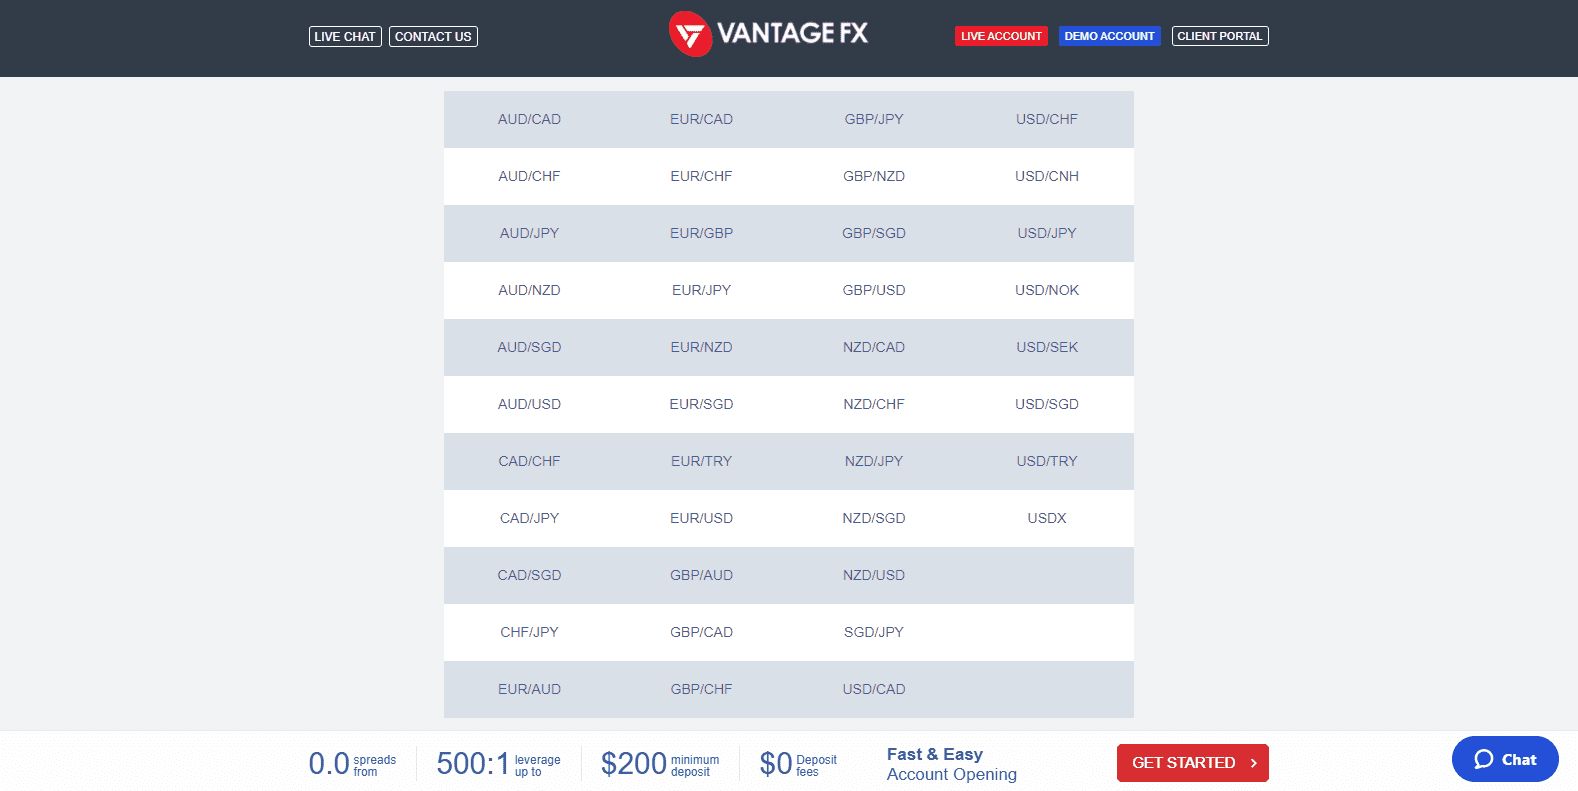 Vantage FX asset offering